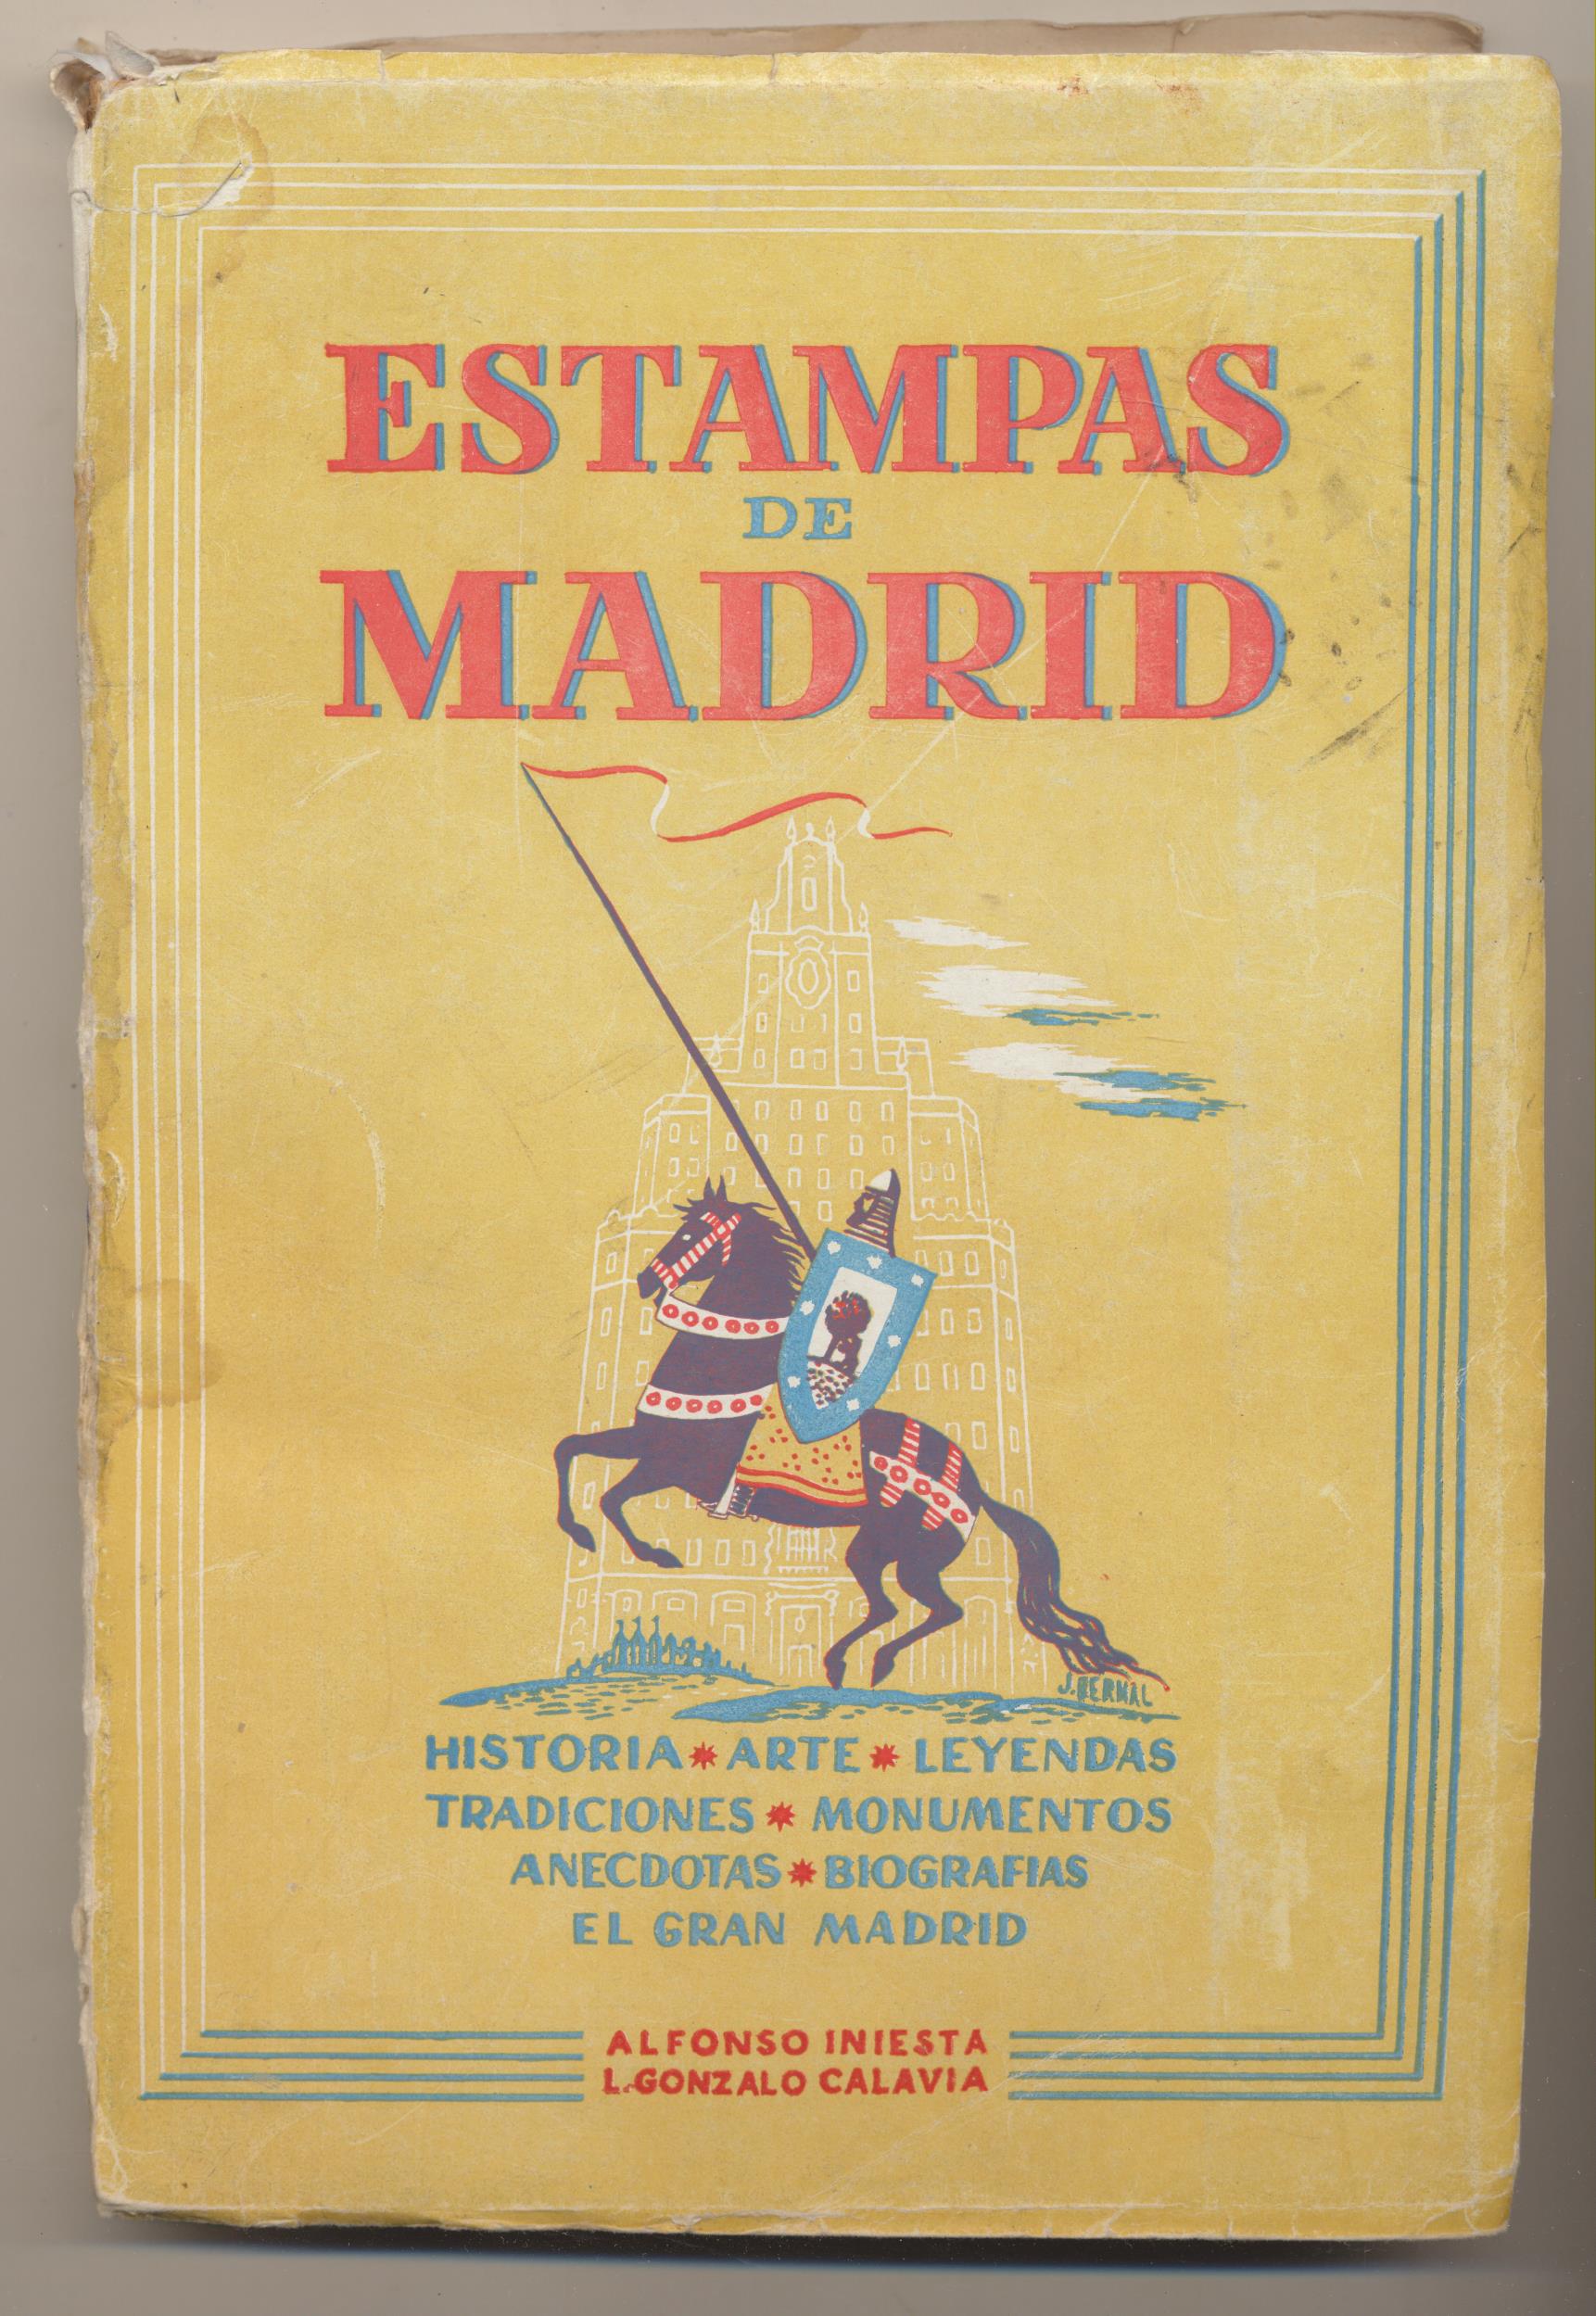 Estampas de Madrid. Historia, Arte, Leyendas... Alfonso Iniesta y L. G. Calavia. 2ª Edición Hernando º952